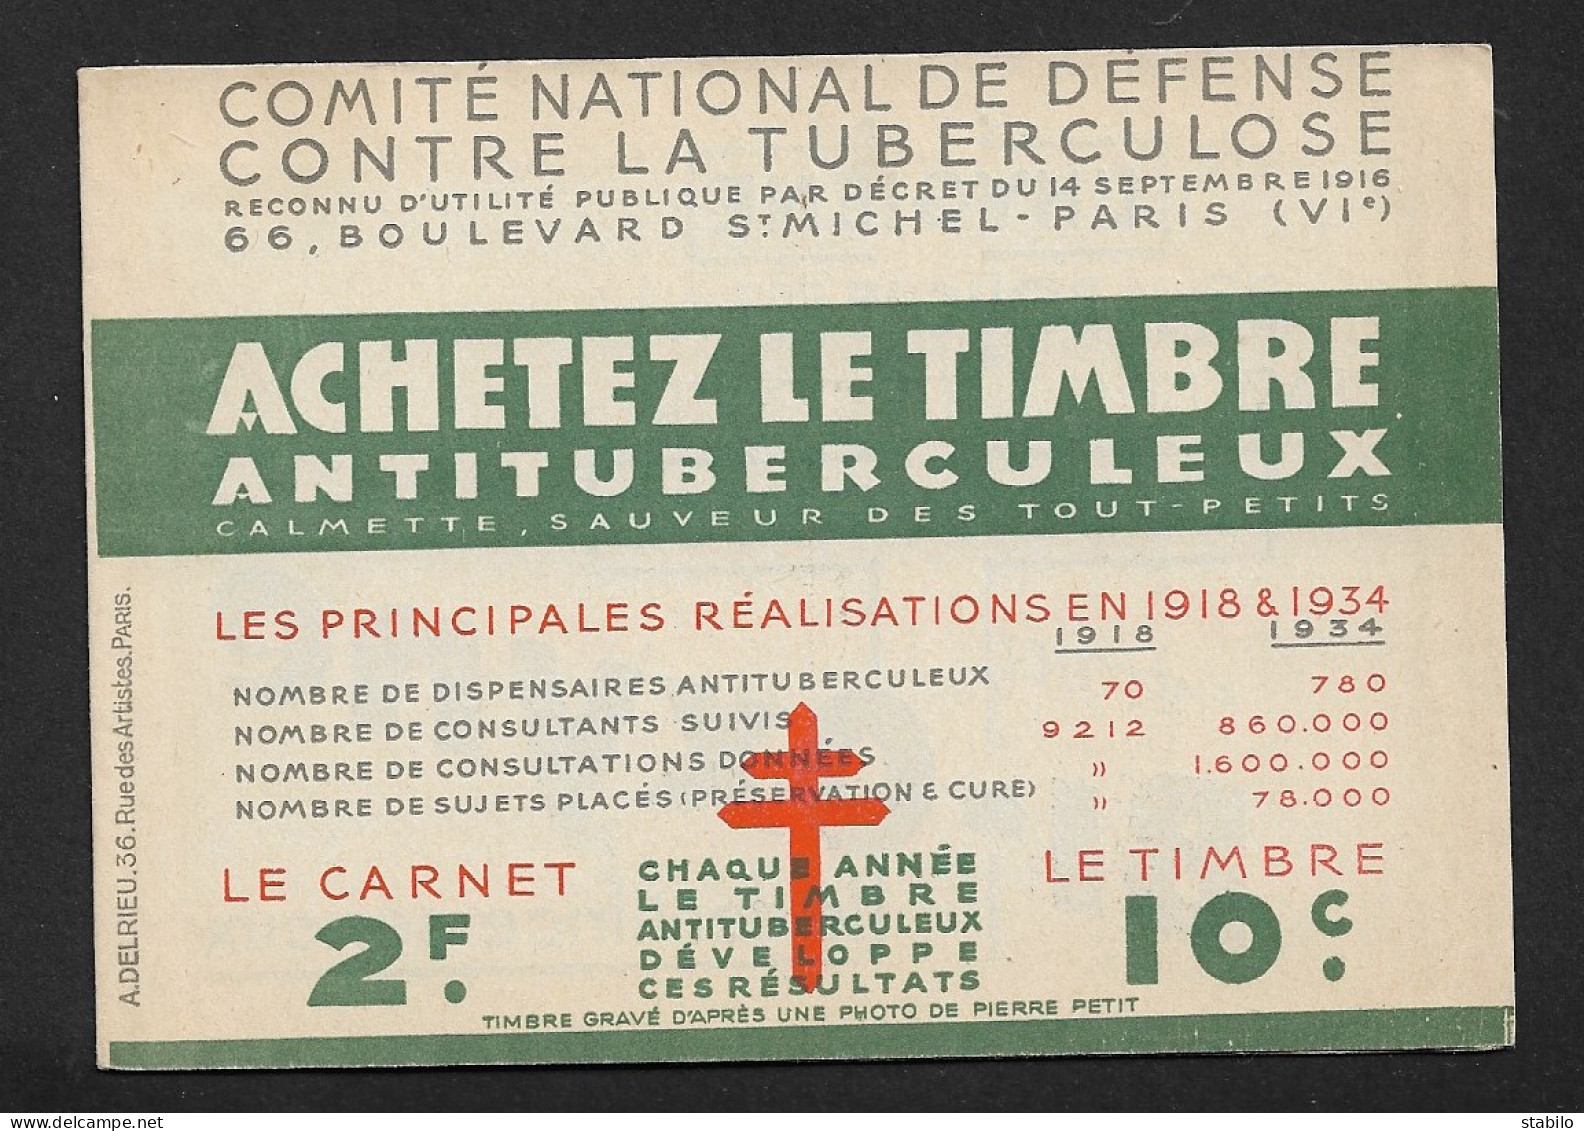 CARNET DE VIGNETTES - COMITE DE DEFENSE CONTRE LA TUBERCULOSE 1934 - FORMAT PLIE 13 X 9 CM - VIGNETTES COLLEES - Cinderellas